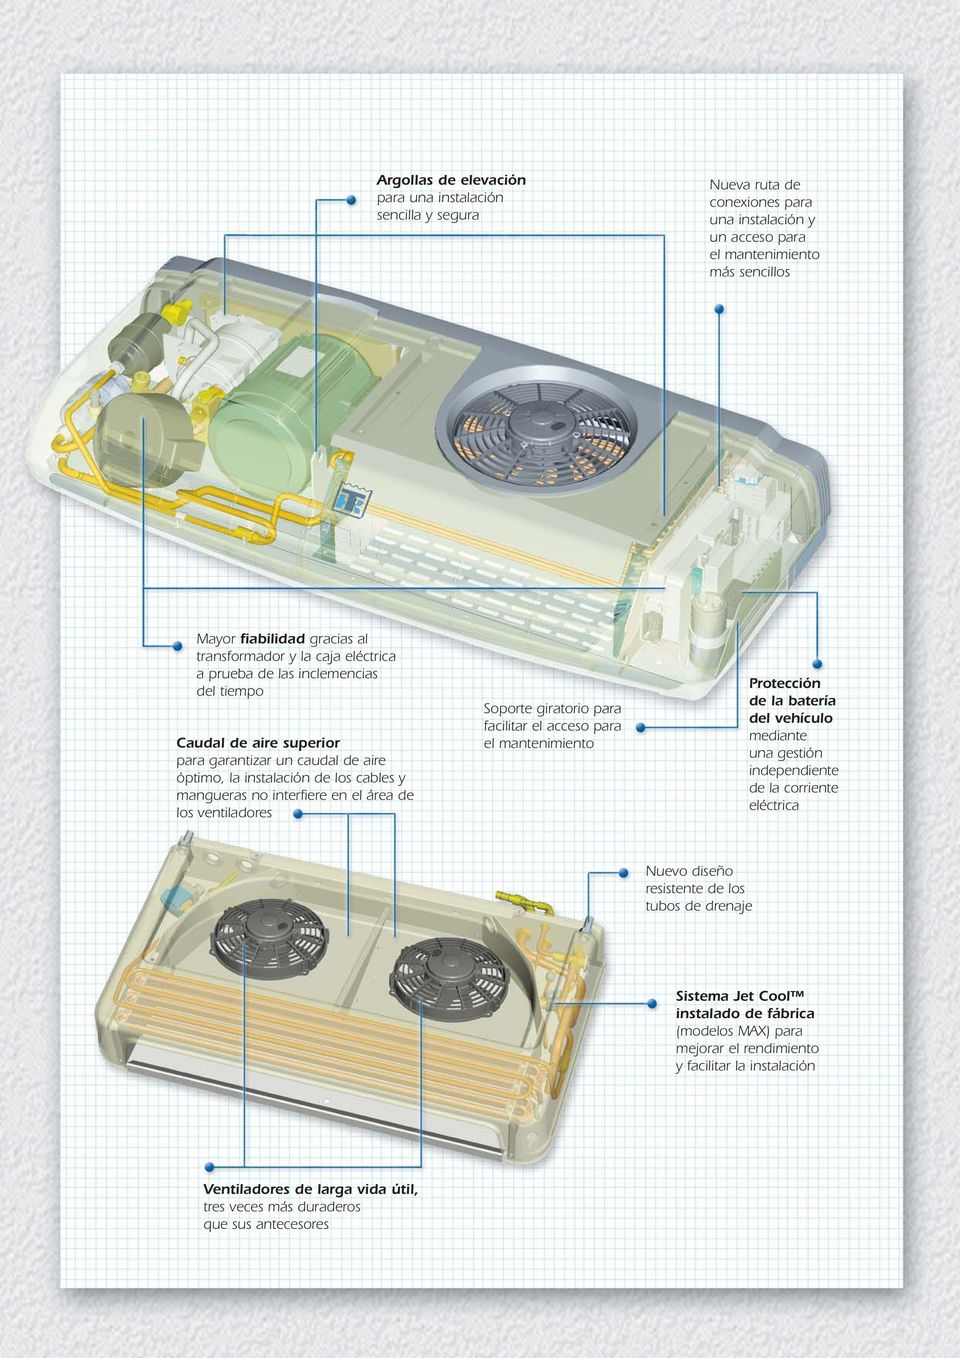 ventiladores Soporte giratorio para facilitar el acceso para el mantenimiento Protección de la batería del vehículo mediante una gestión independiente de la corriente eléctrica Nuevo diseño